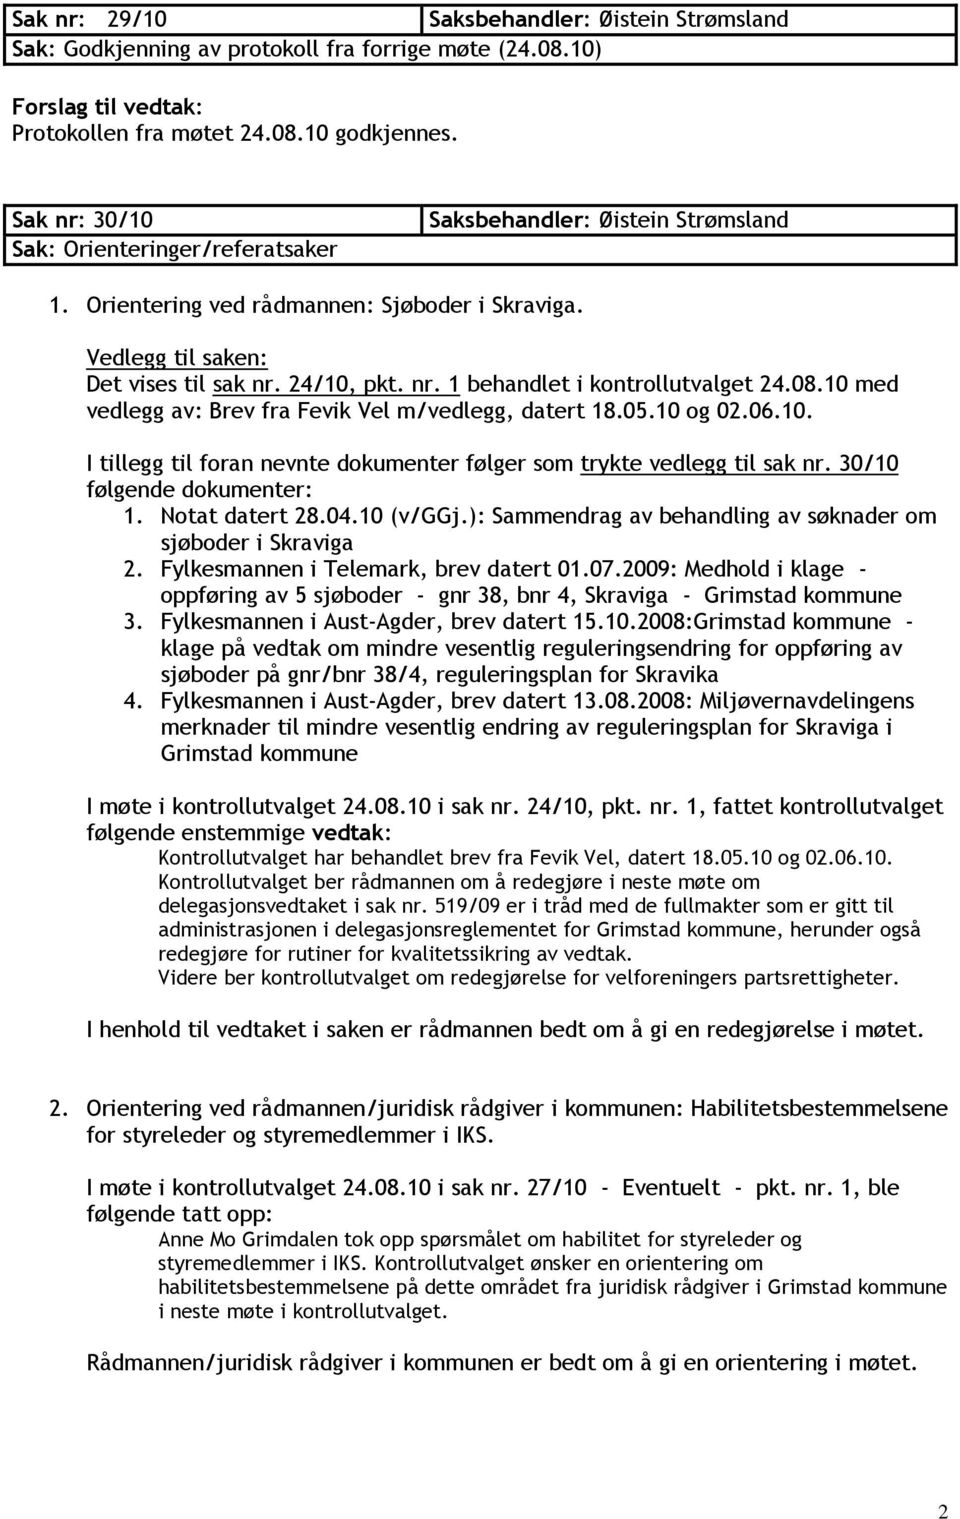 30/10 følgende dokumenter: 1. Notat datert 28.04.10 (v/ggj.): Sammendrag av behandling av søknader om sjøboder i Skraviga 2. Fylkesmannen i Telemark, brev datert 01.07.